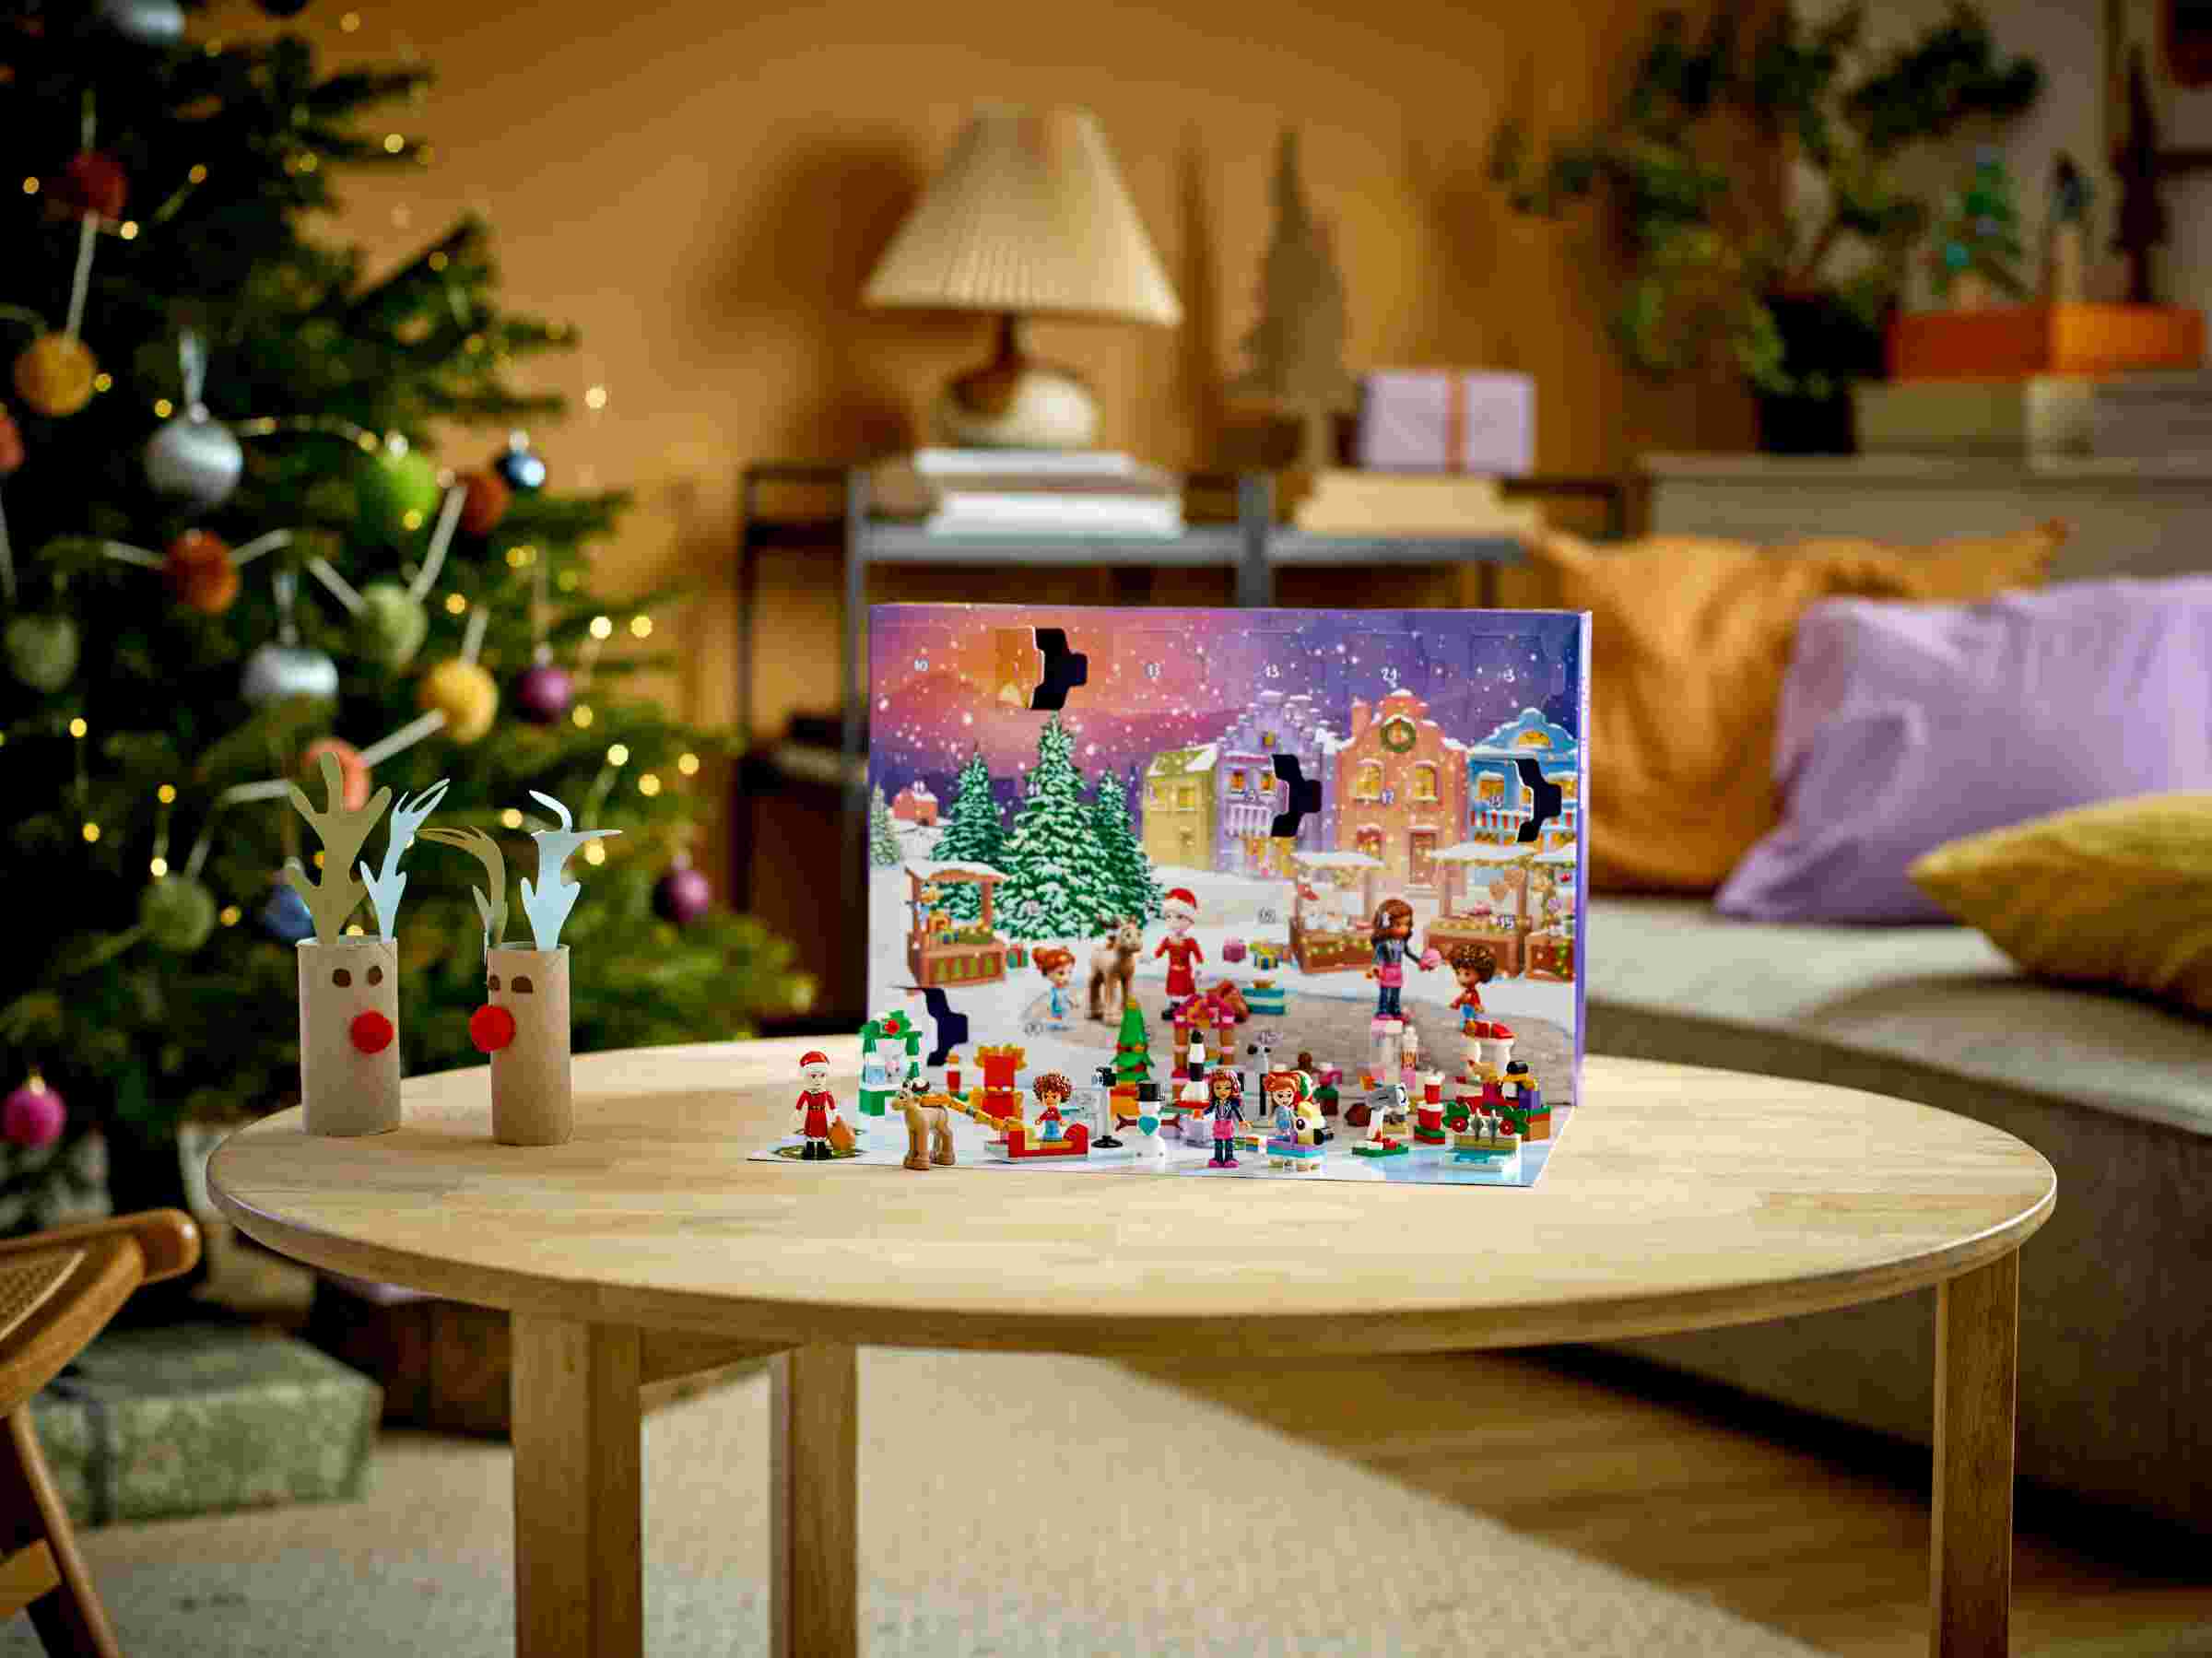 LEGO 41706 Friends Adventskalender 2022 - 24 Überraschungen inkl. Weihnachtsmann